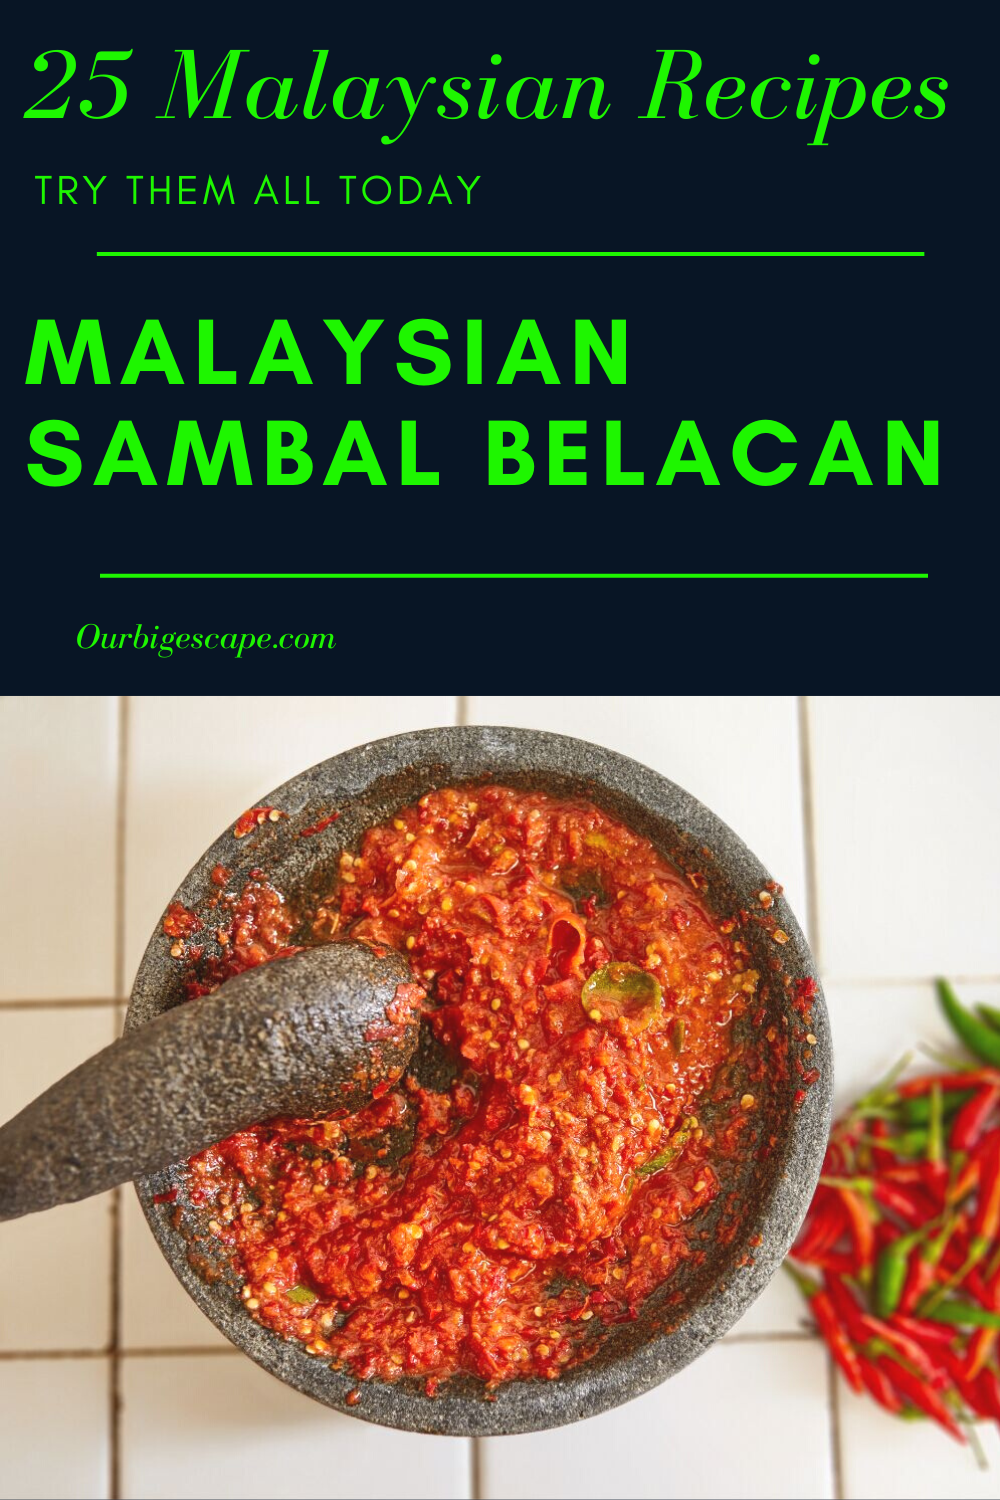 12. Malaysian Sambal Belacan